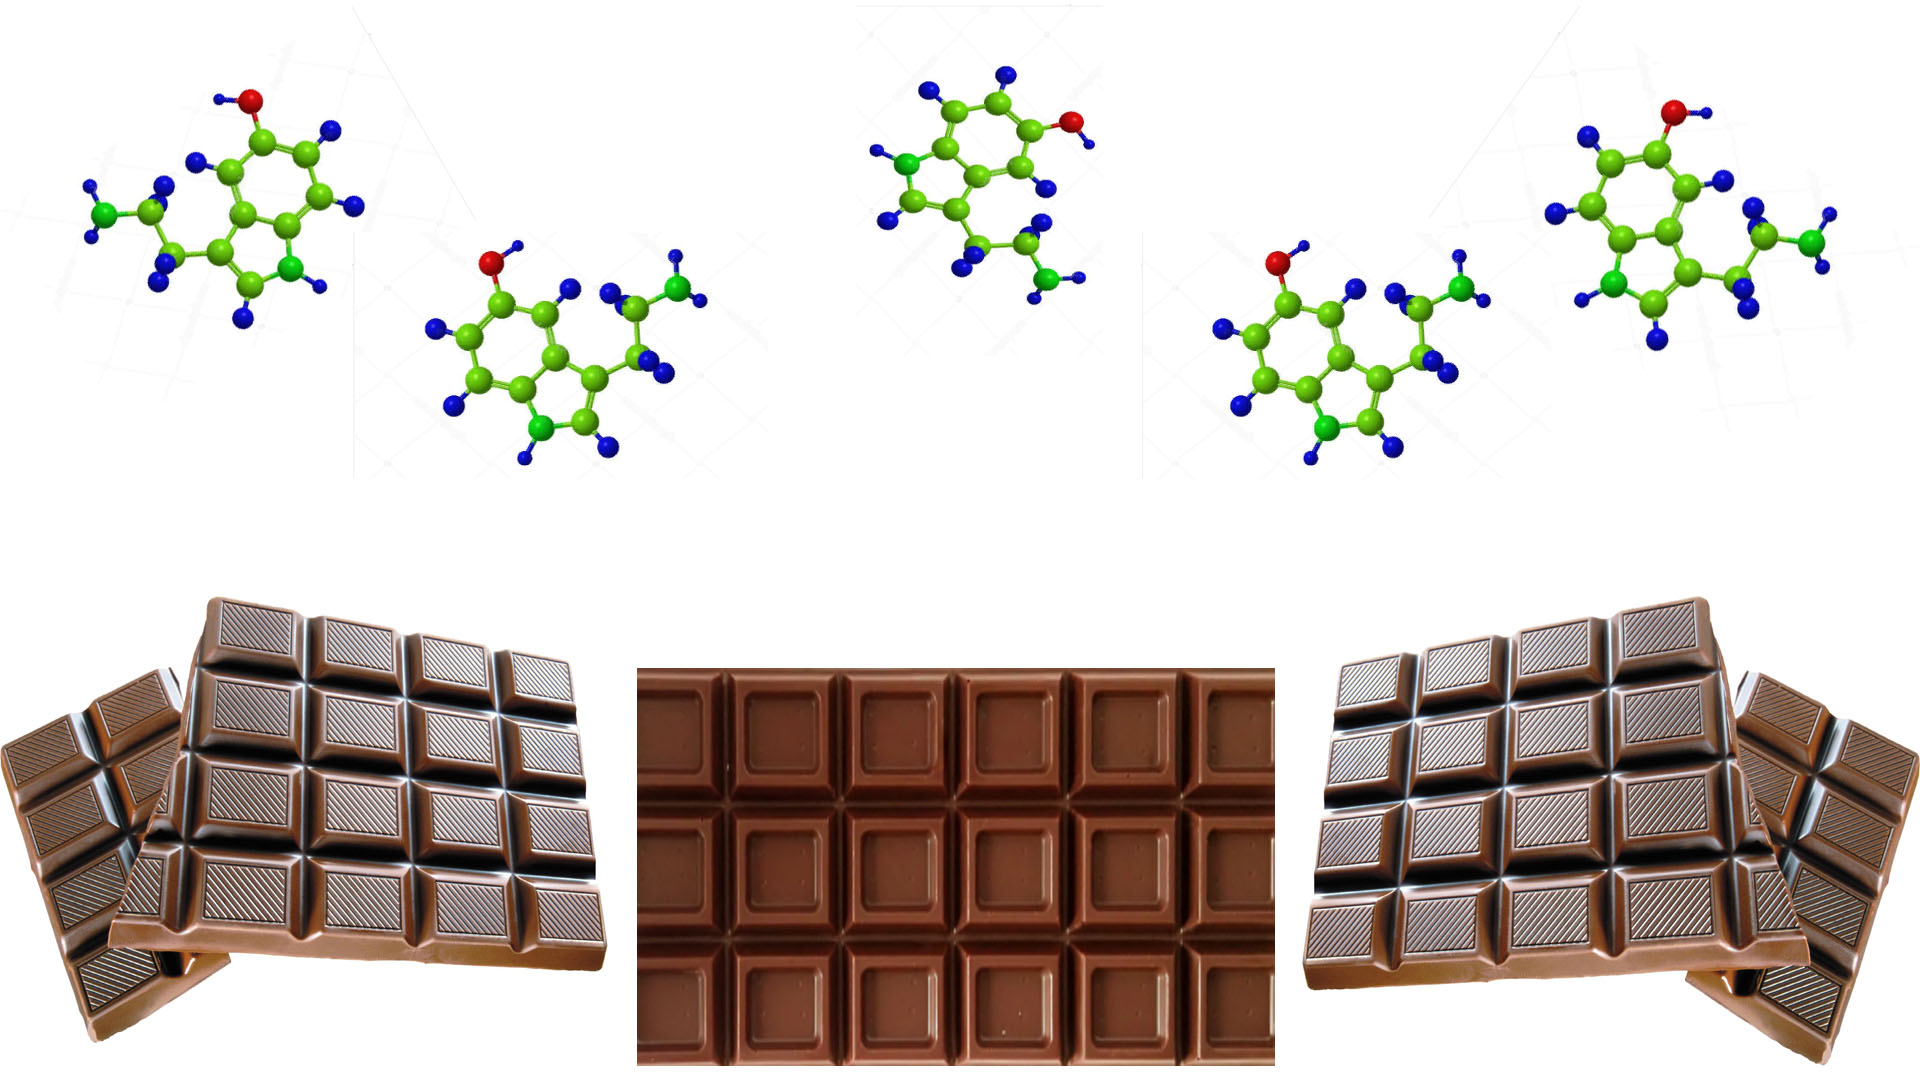 Серотонин гормон счастья, а шоколад помогает его выработке в нашем организме